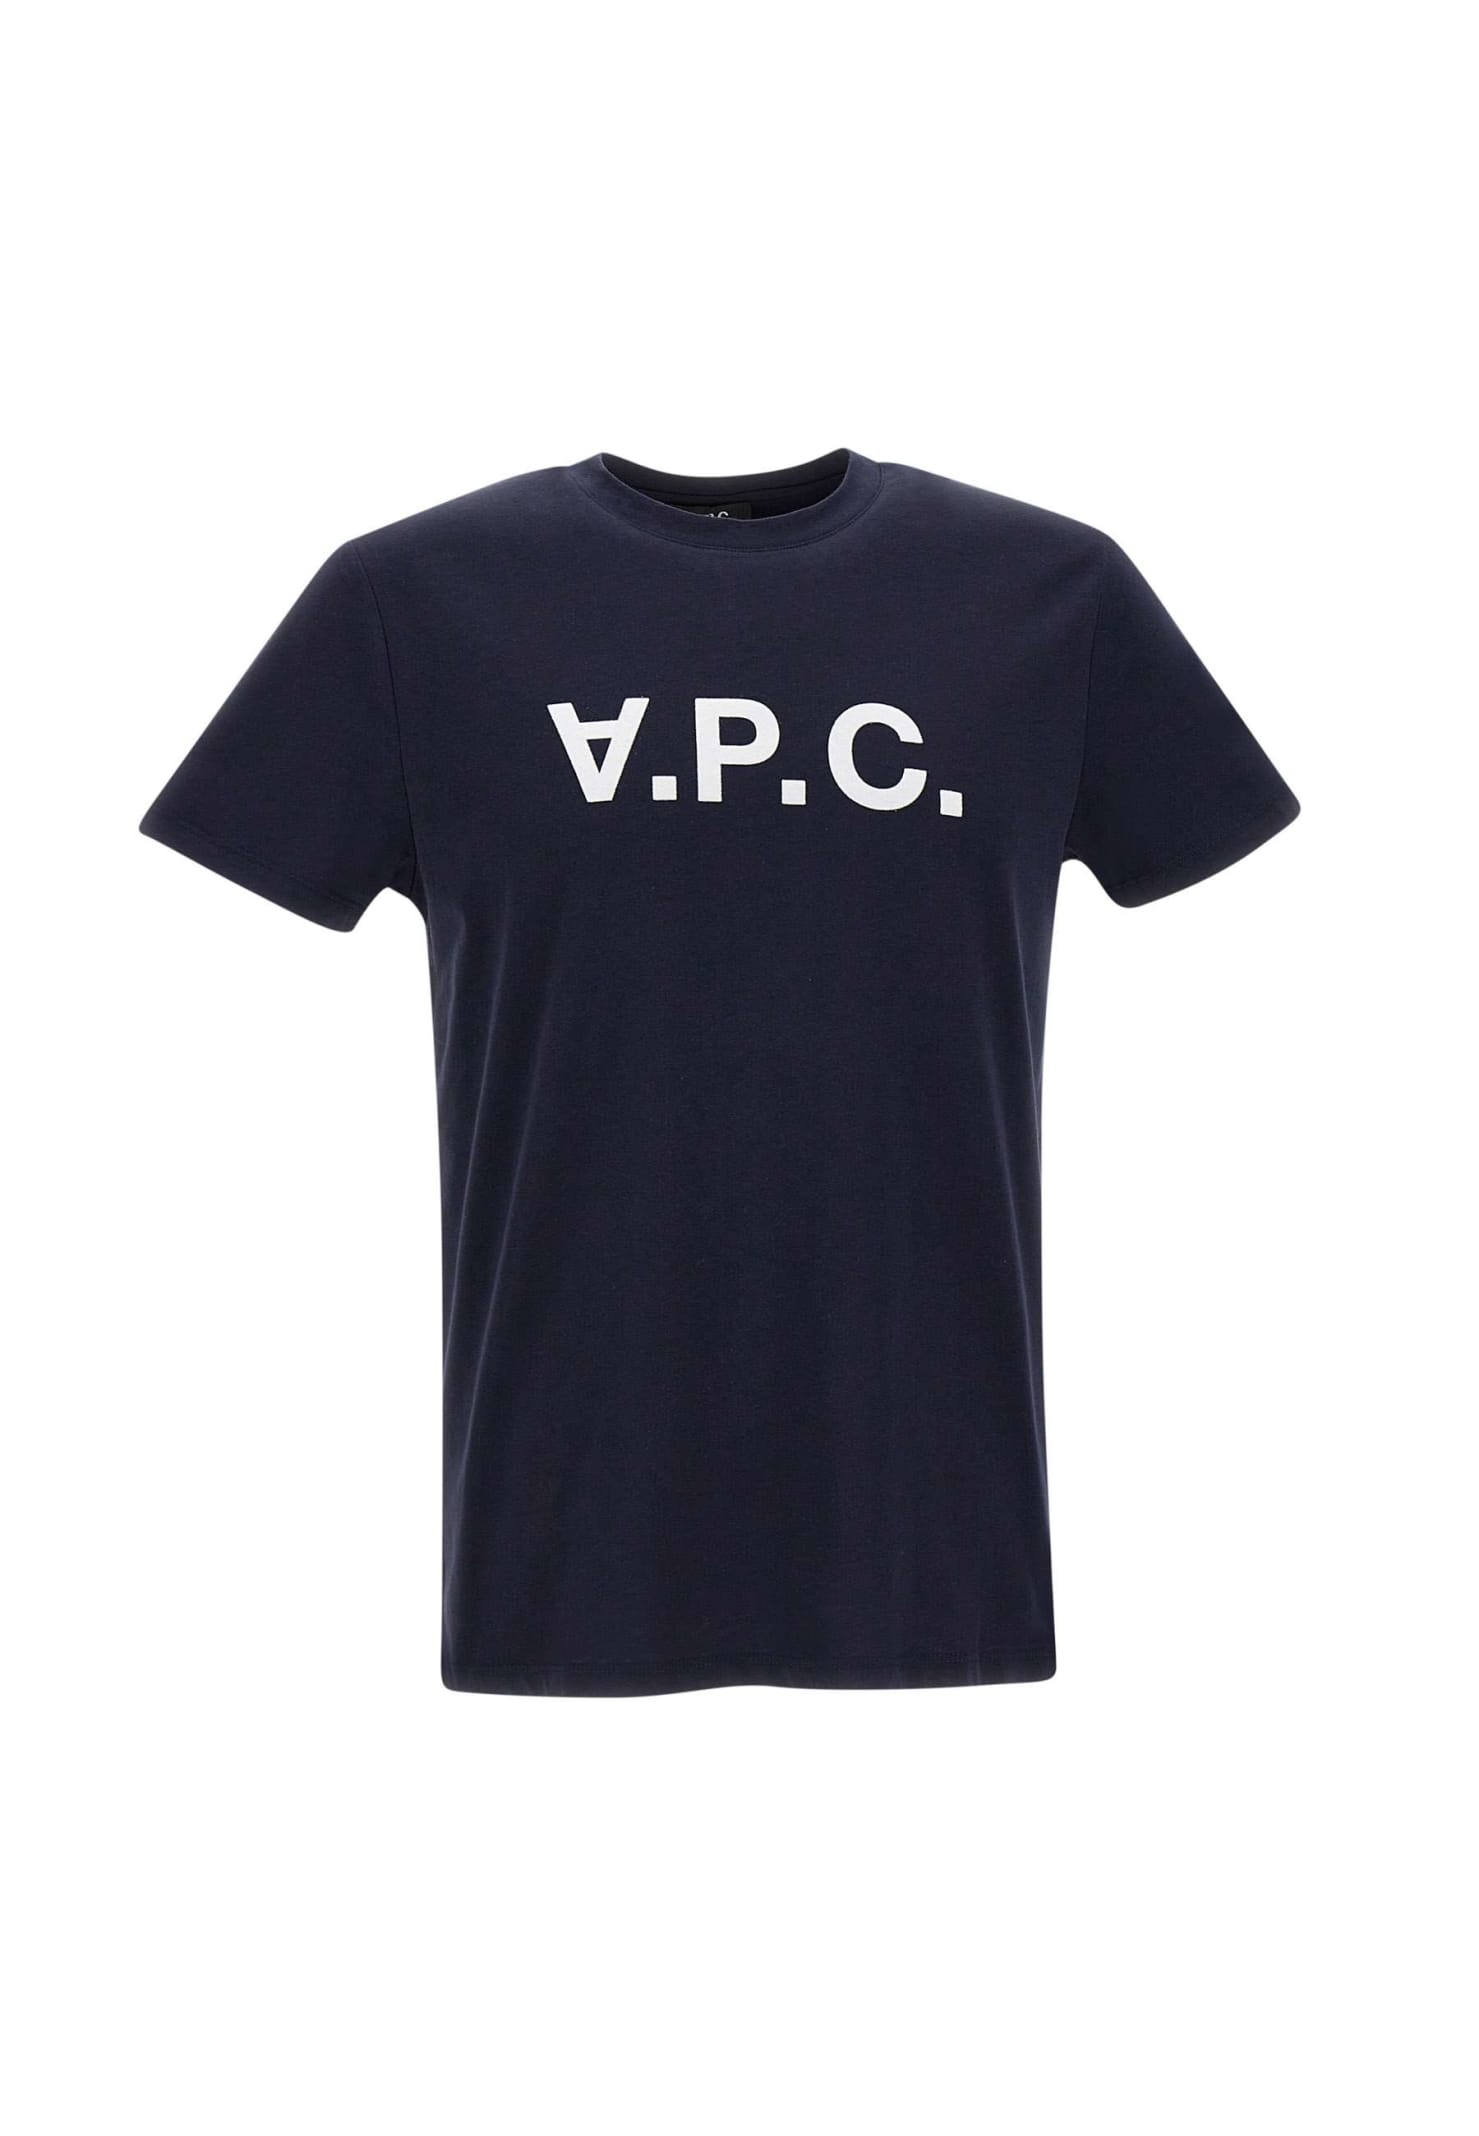 A.P.C. Cotton vpc T-shirt